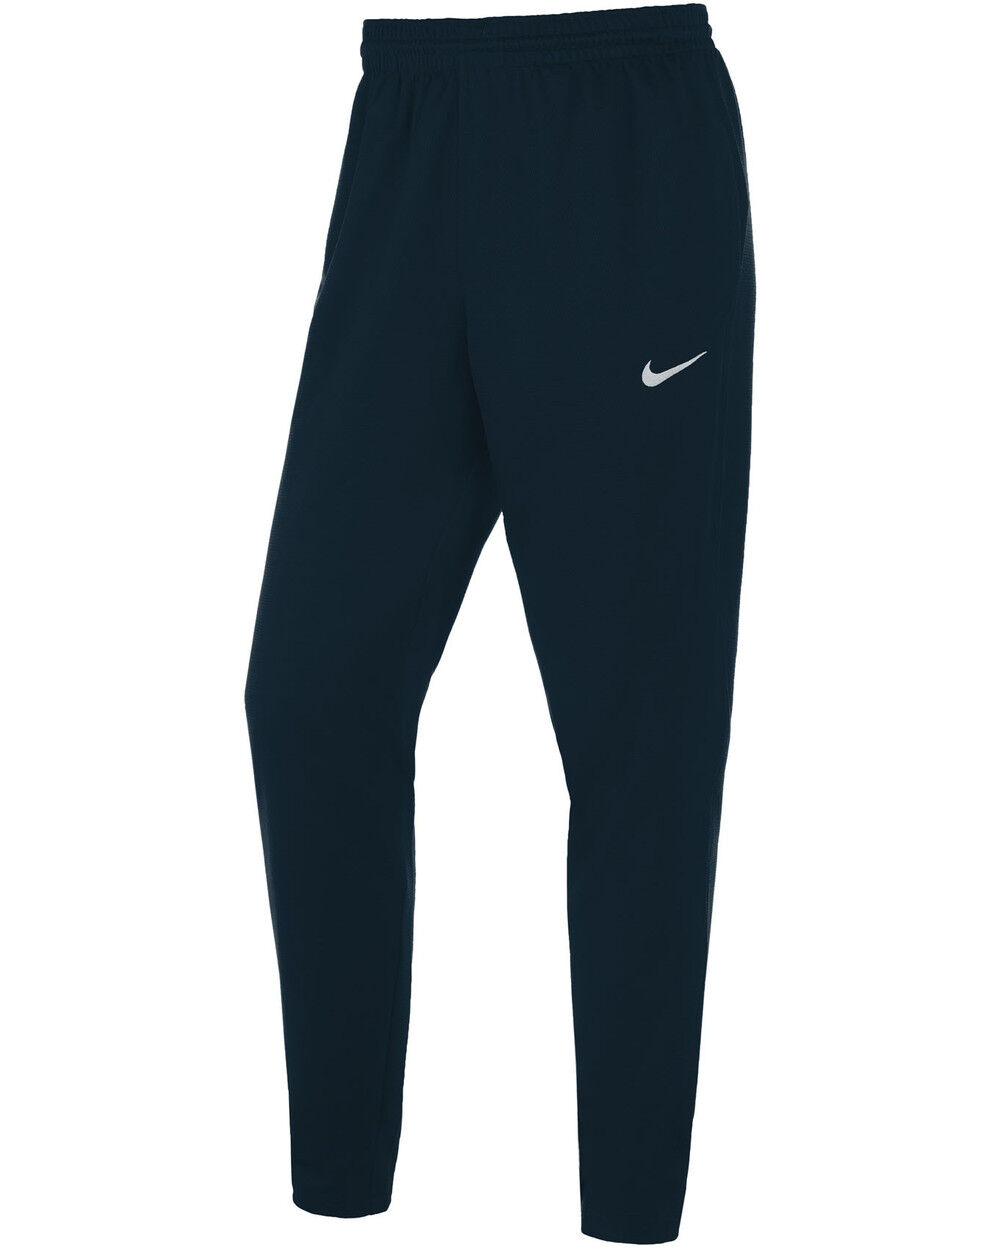 Pantalón de chándal Nike Team Azul Marino Hombre - NT0207-451